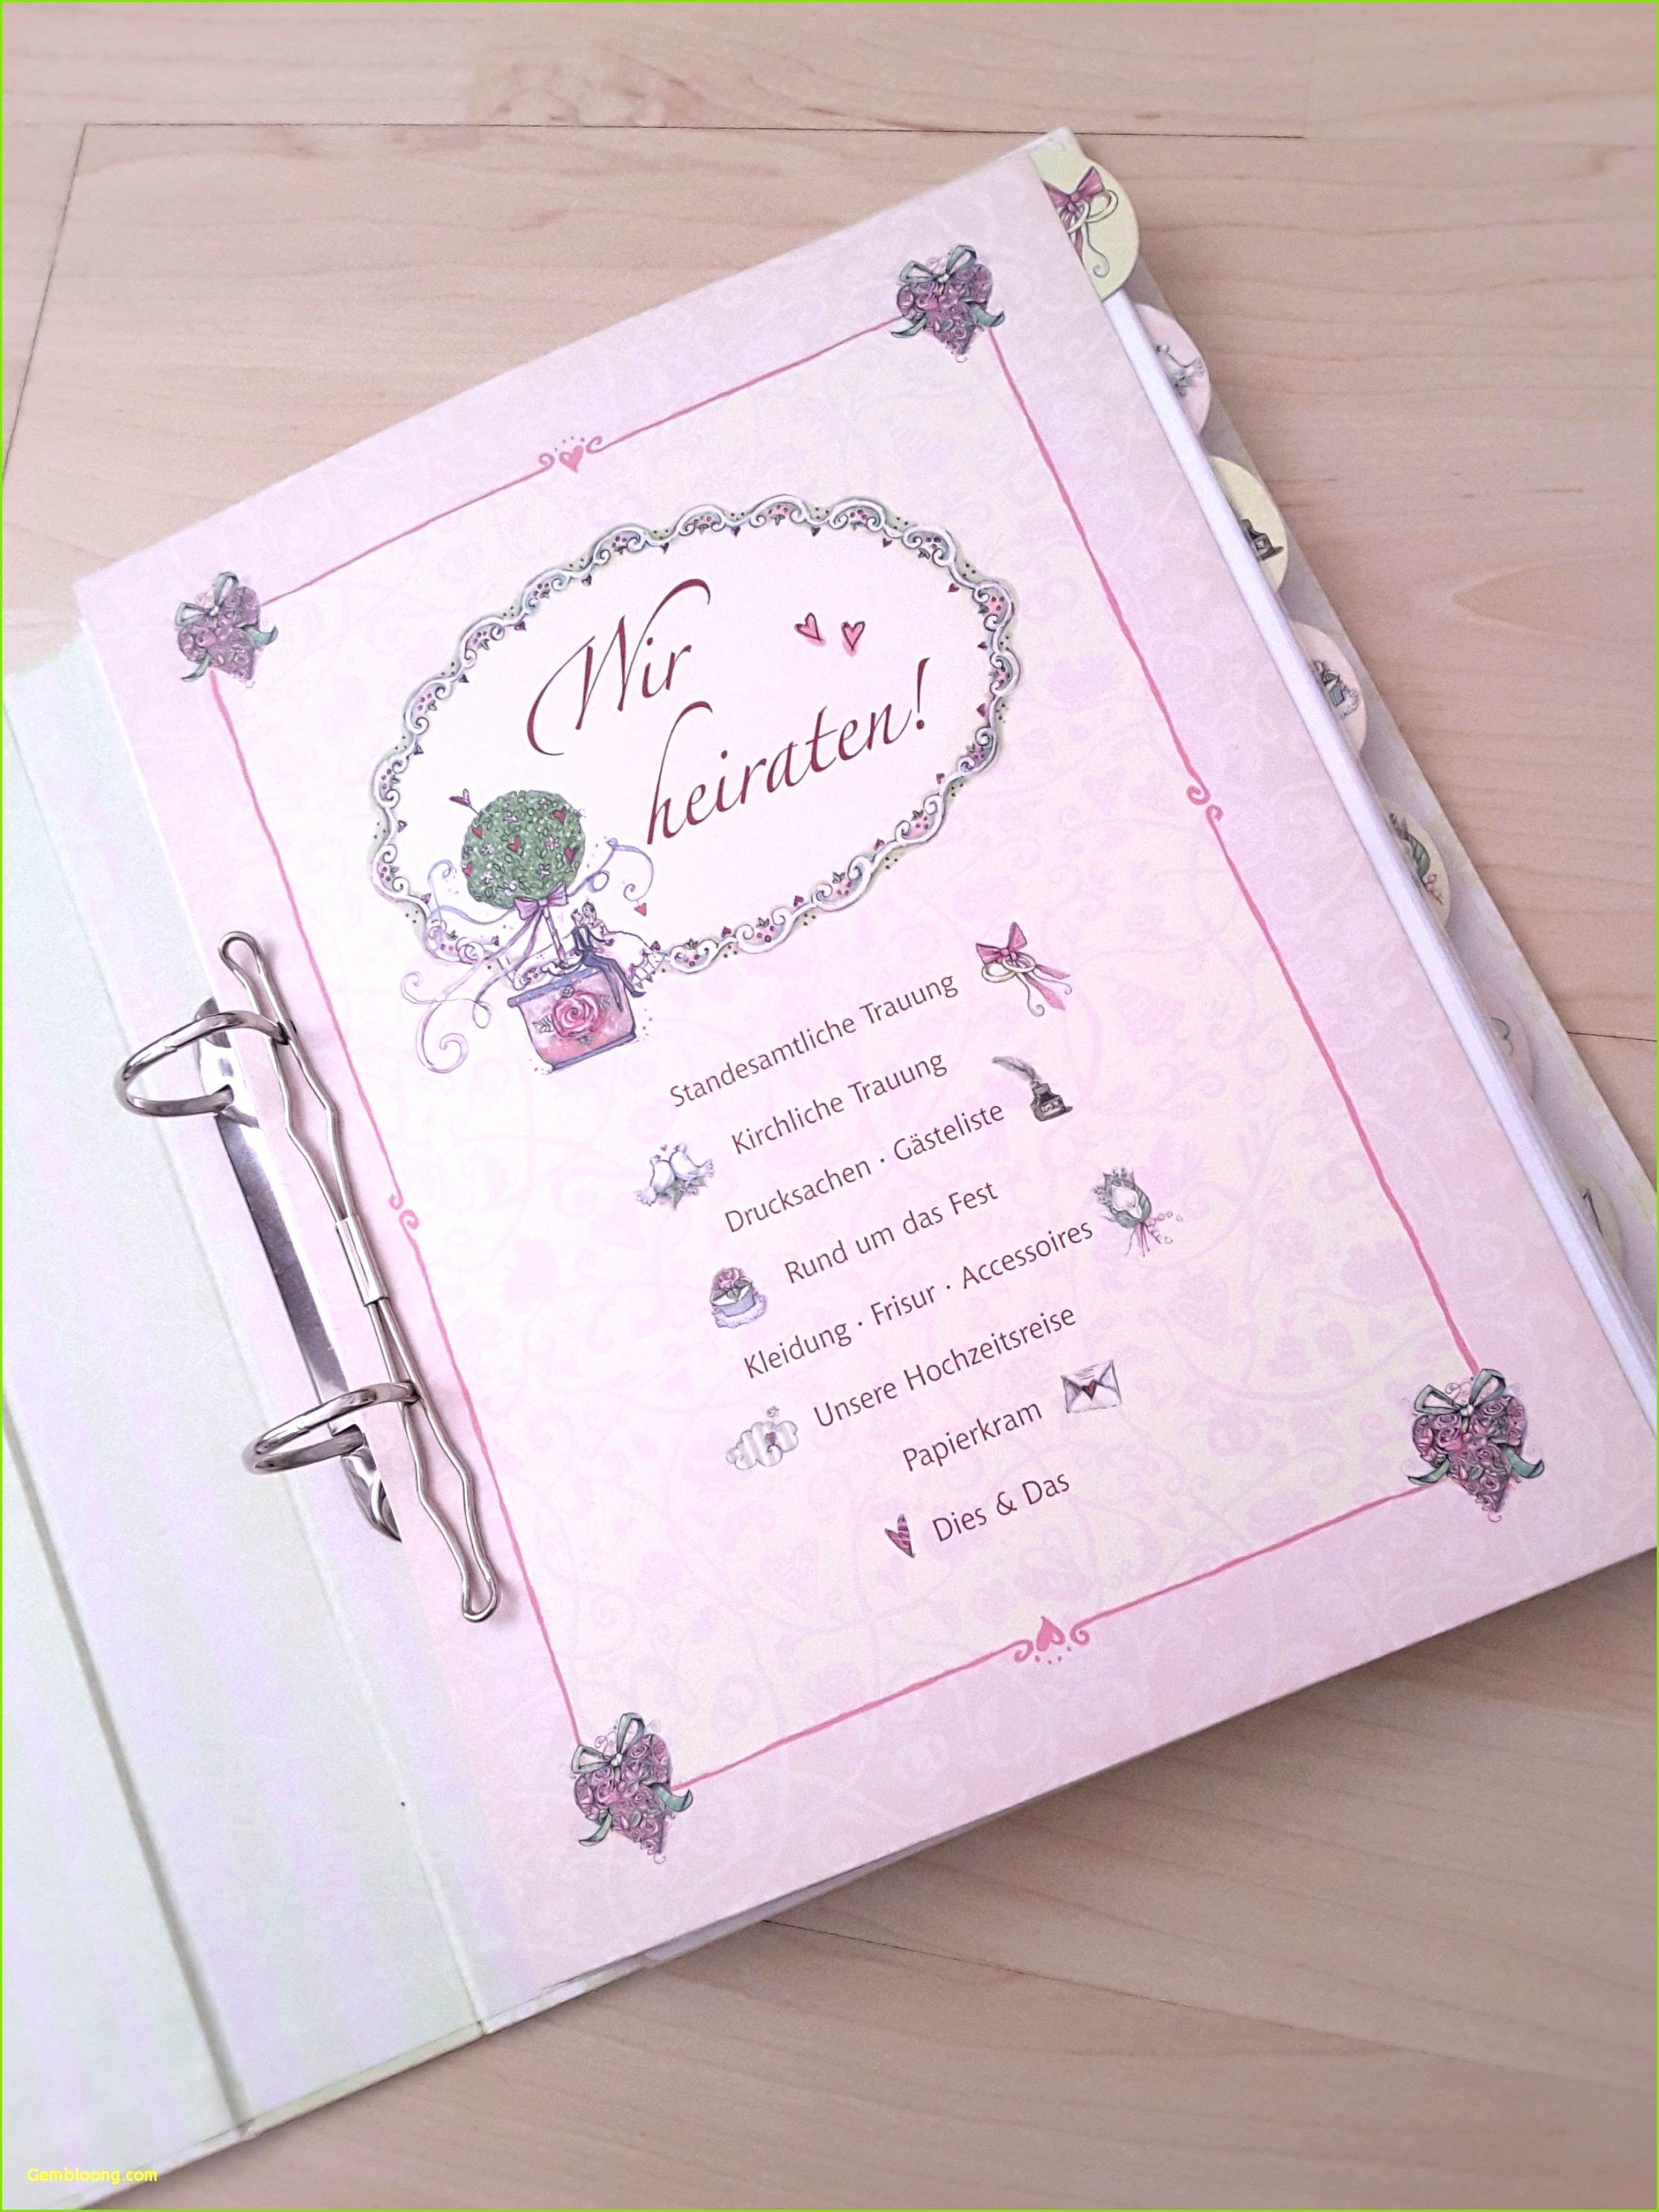 Einladungskarten Hochzeit Vorlagen Kreative Hochzeitskarten Einladung Beste Probe Media Image 0d 59